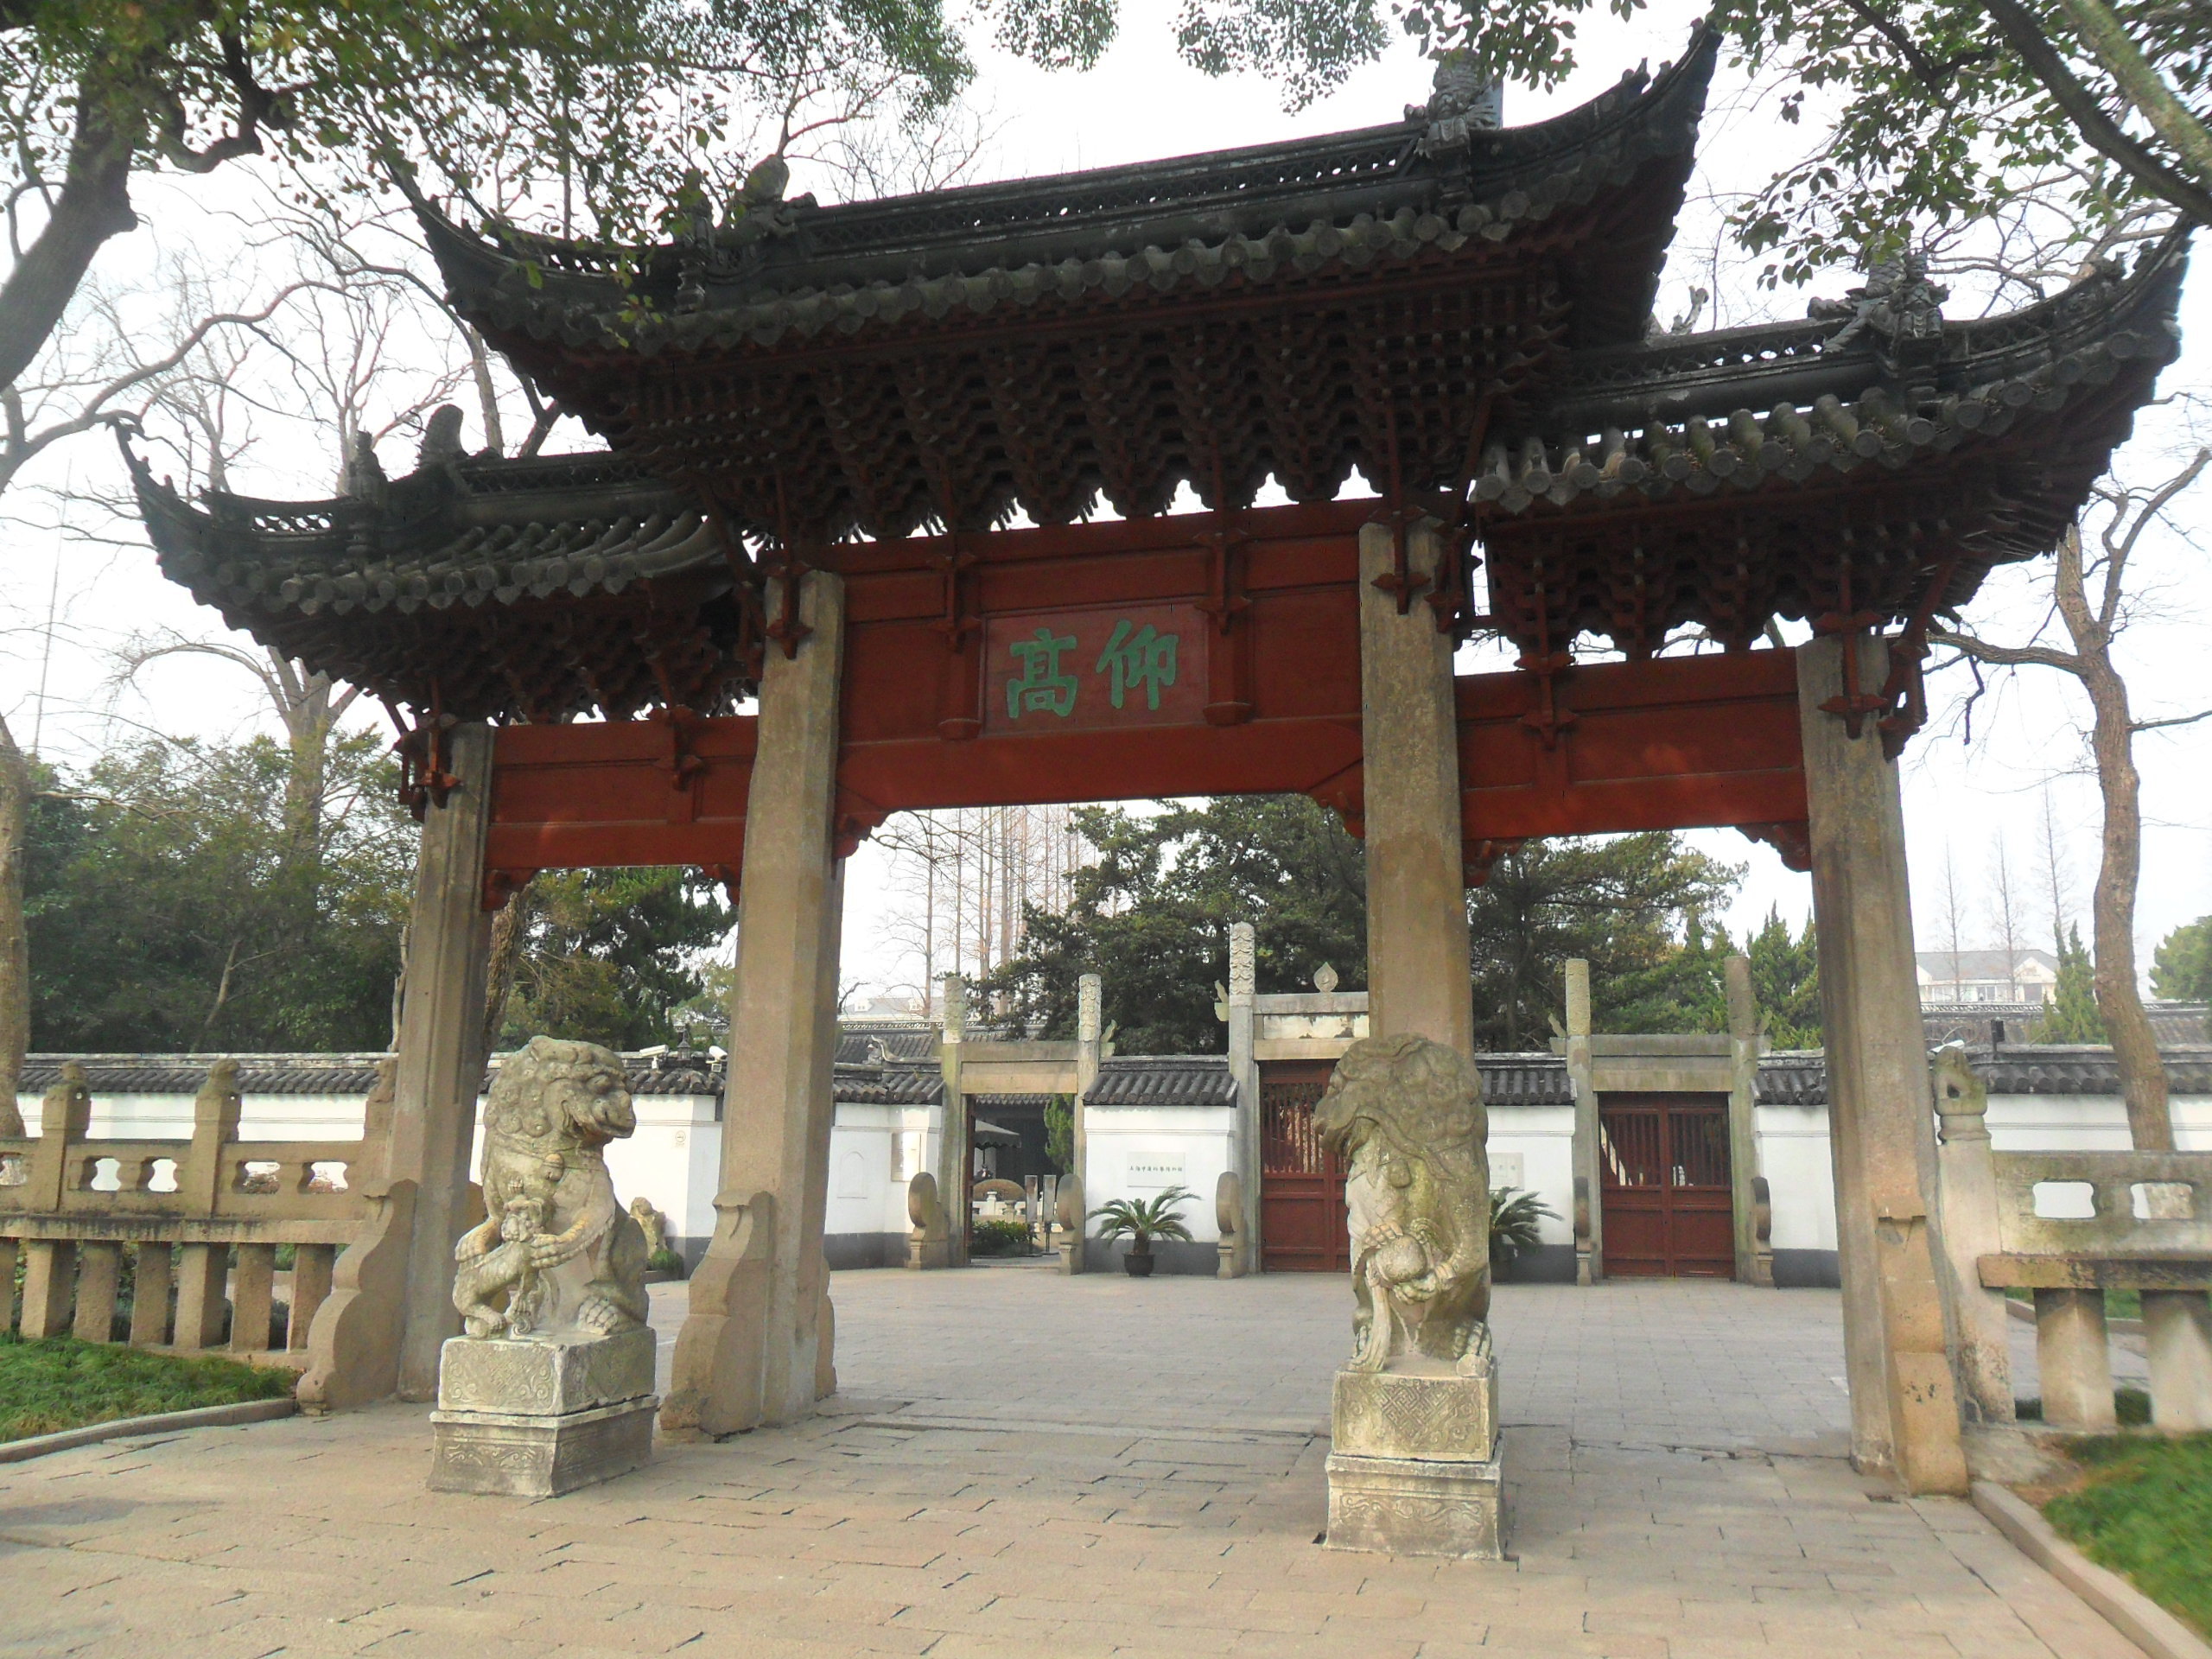 【携程攻略】上海嘉定孔庙景点,嘉定孔庙坐落于嘉定